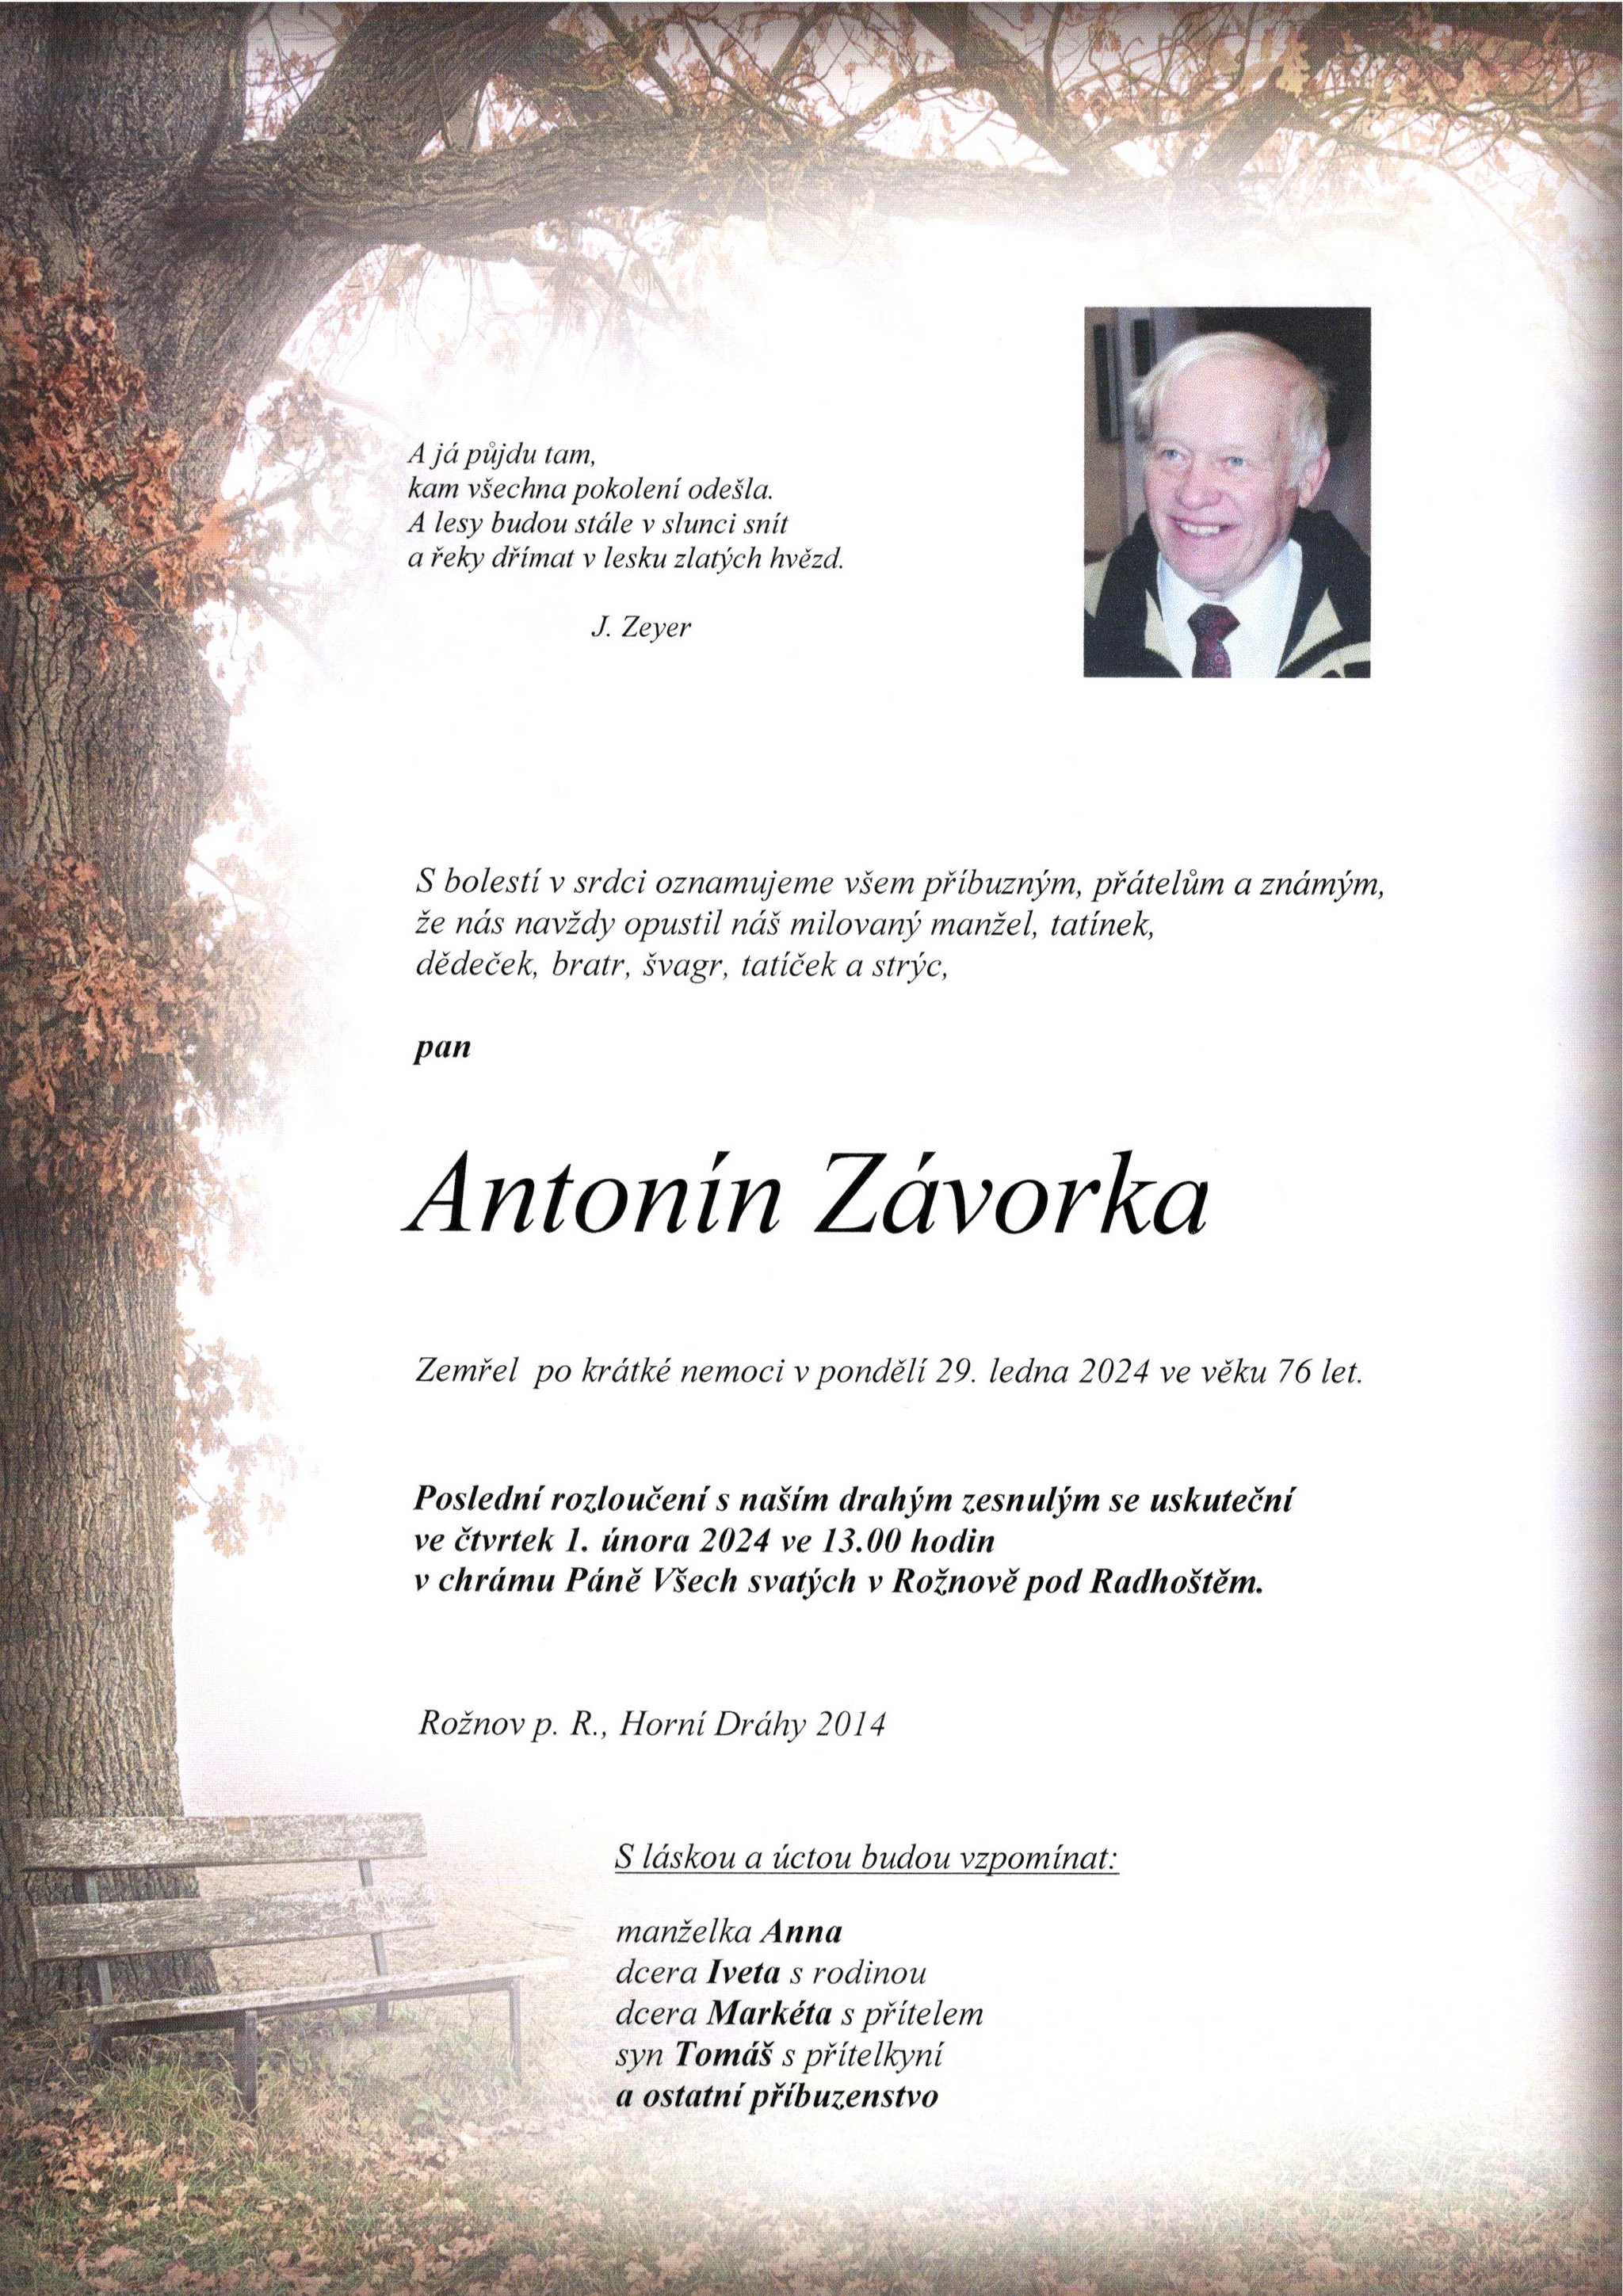 Antonín Závorka